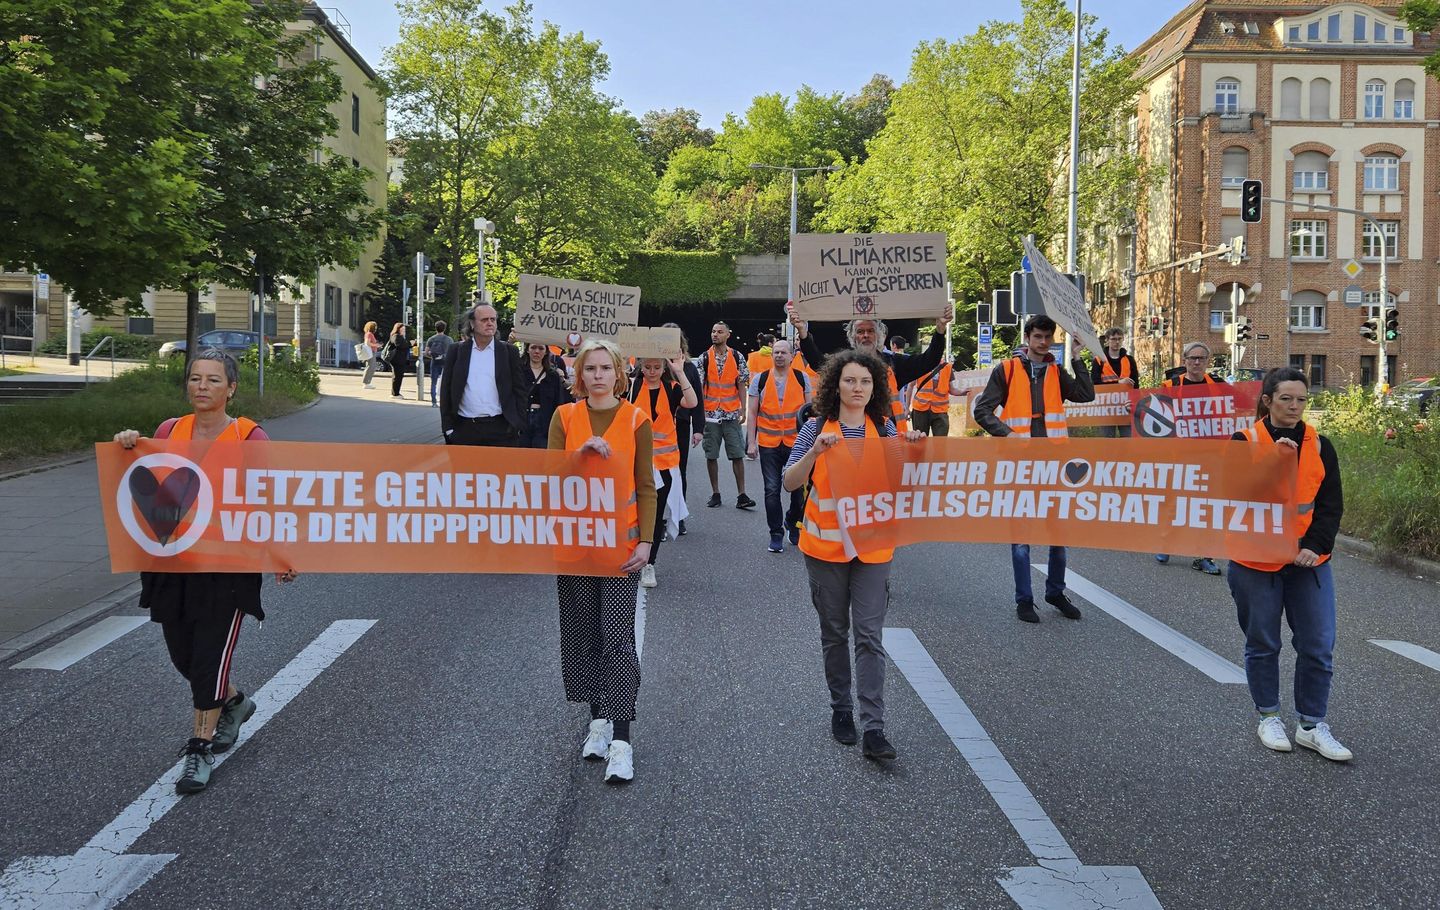 Alman hükümeti, Scholz'un iklim aktivistlerine yönelik baskınları teşvik ettiği yorumlarını yalanladı